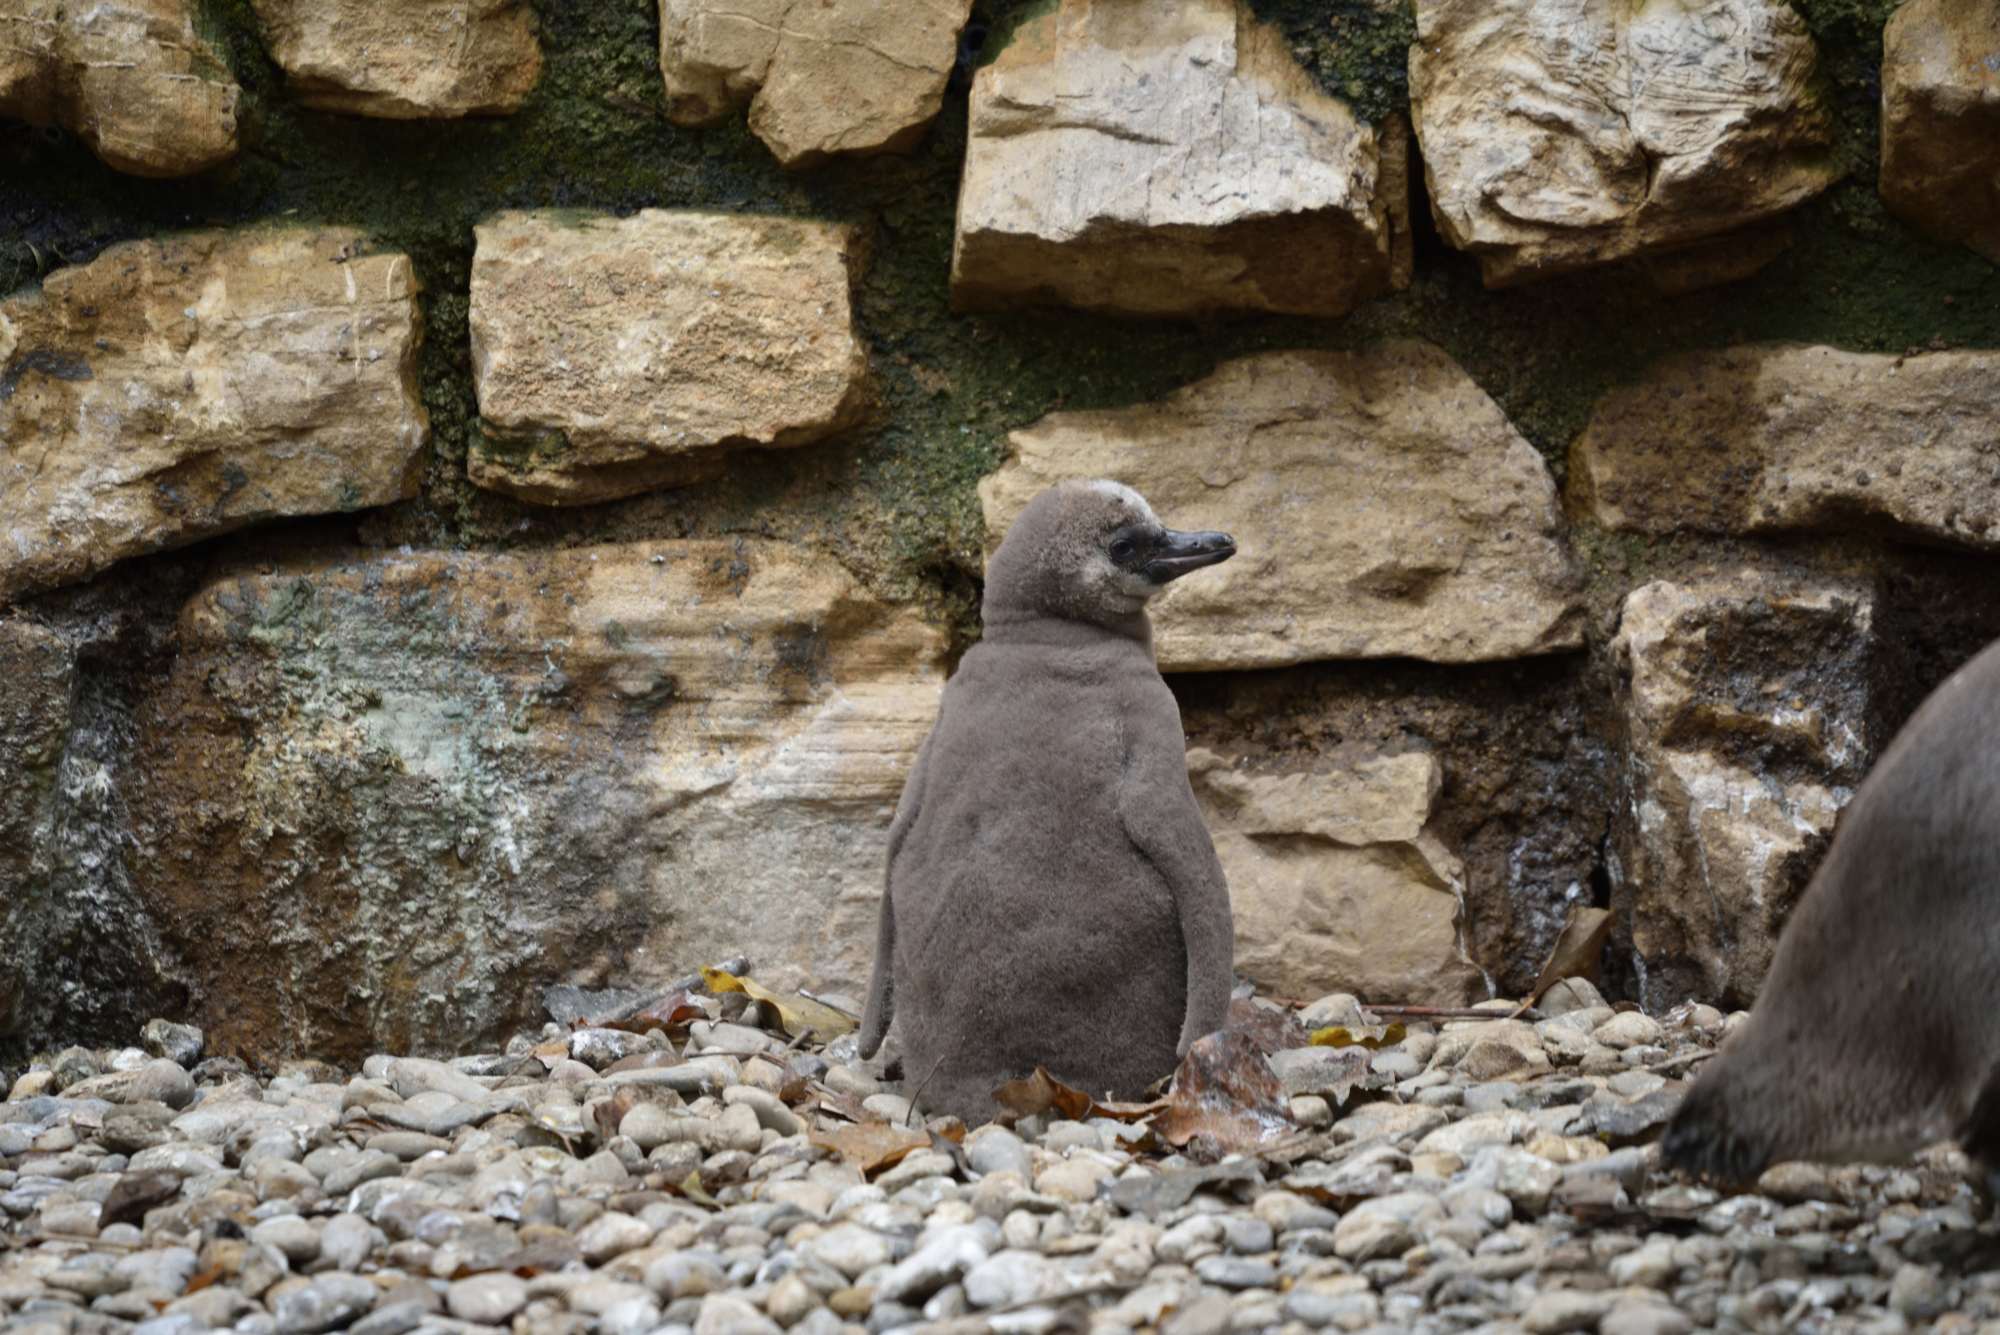 Sandy e Mambo: ecco i due nuovi pulcini di pinguino di Humboldt nati al Parco delle Cornelle